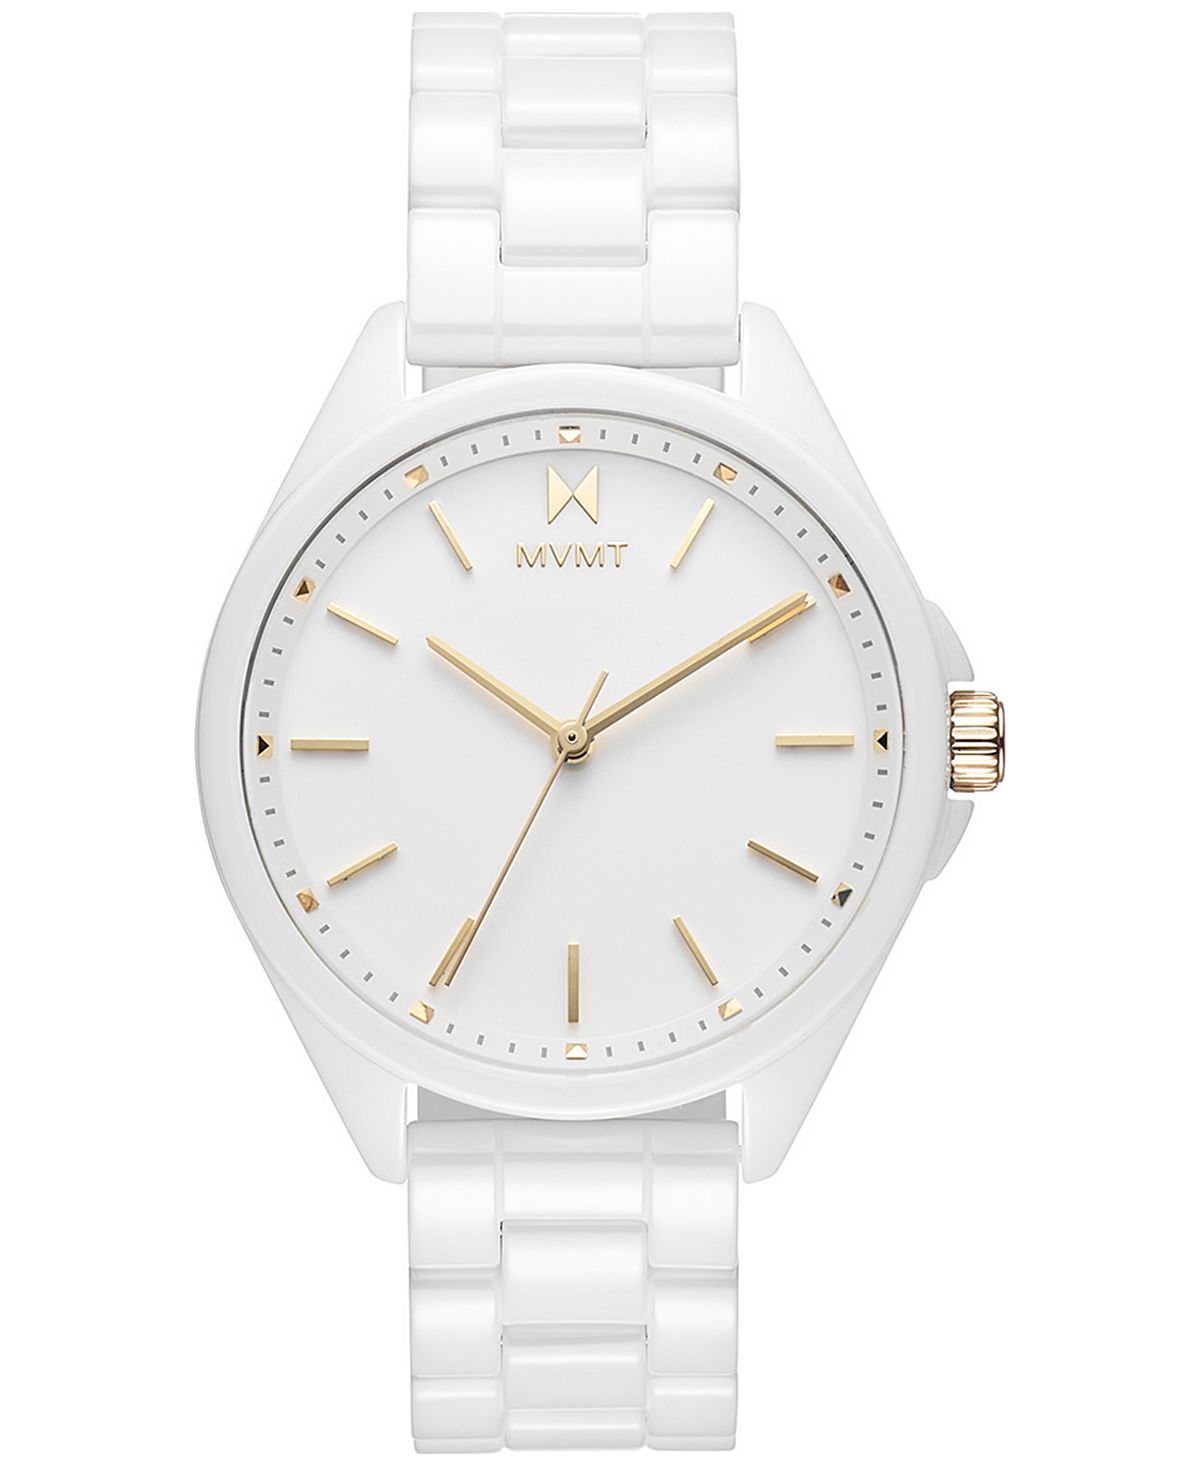 Часы Coronada с белым керамическим браслетом 36 мм MVMT, белый